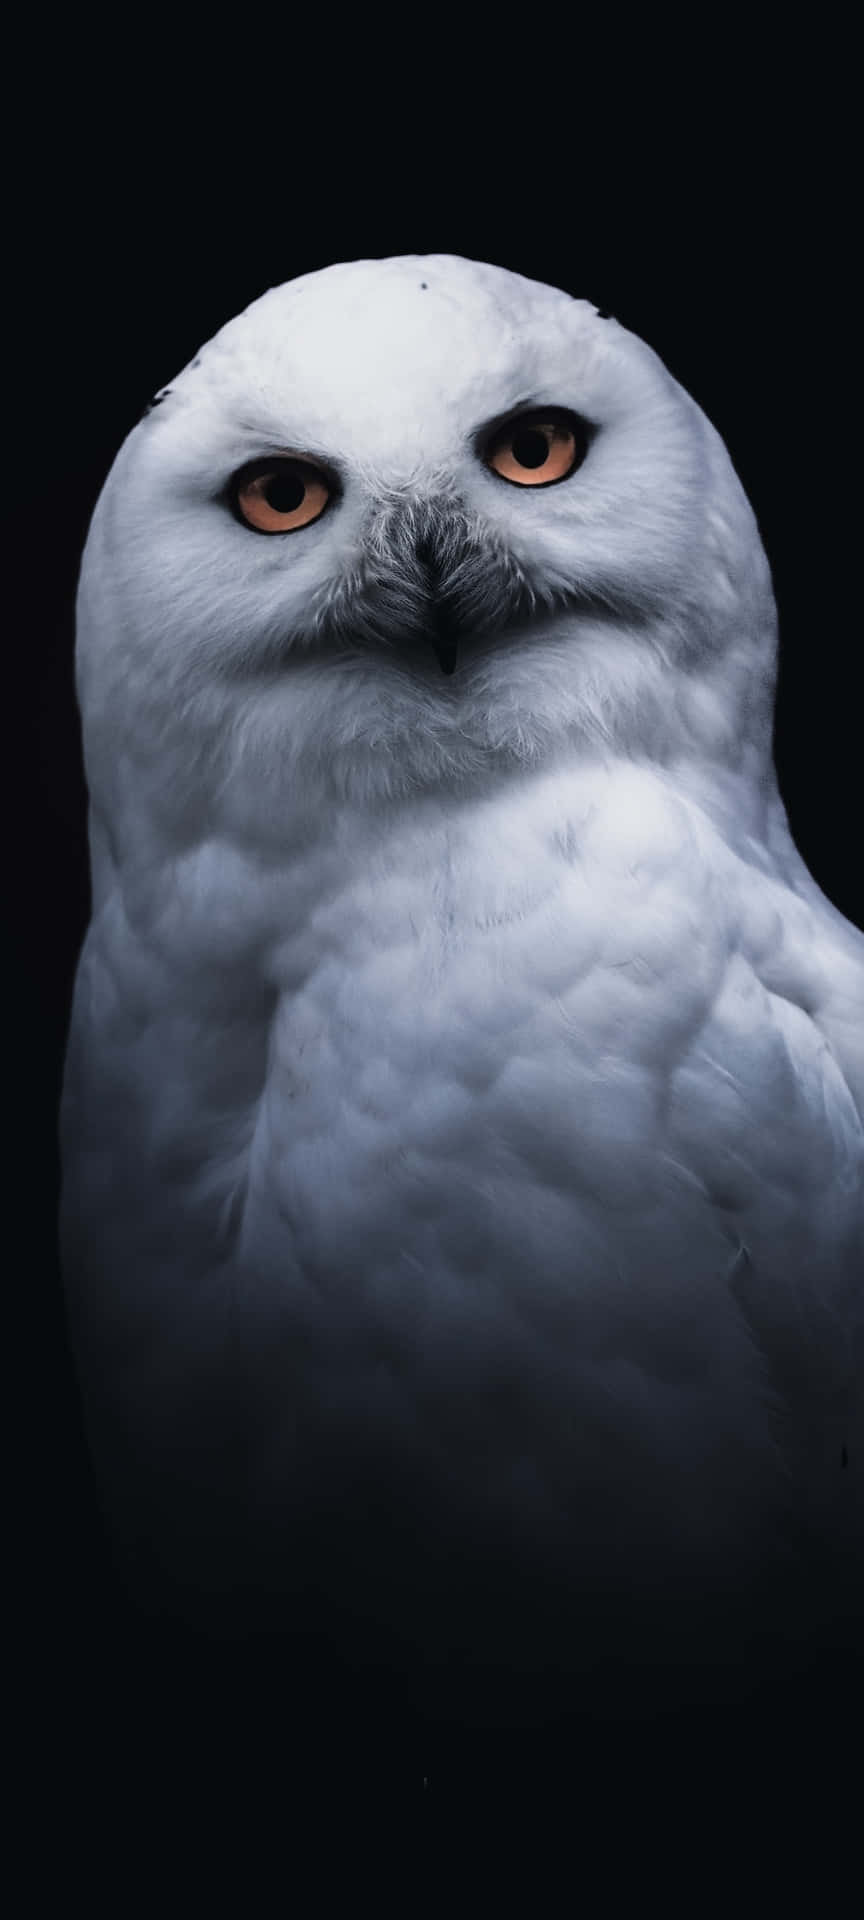 Consigueel Nuevo Revolucionario Owl Phone. Fondo de pantalla